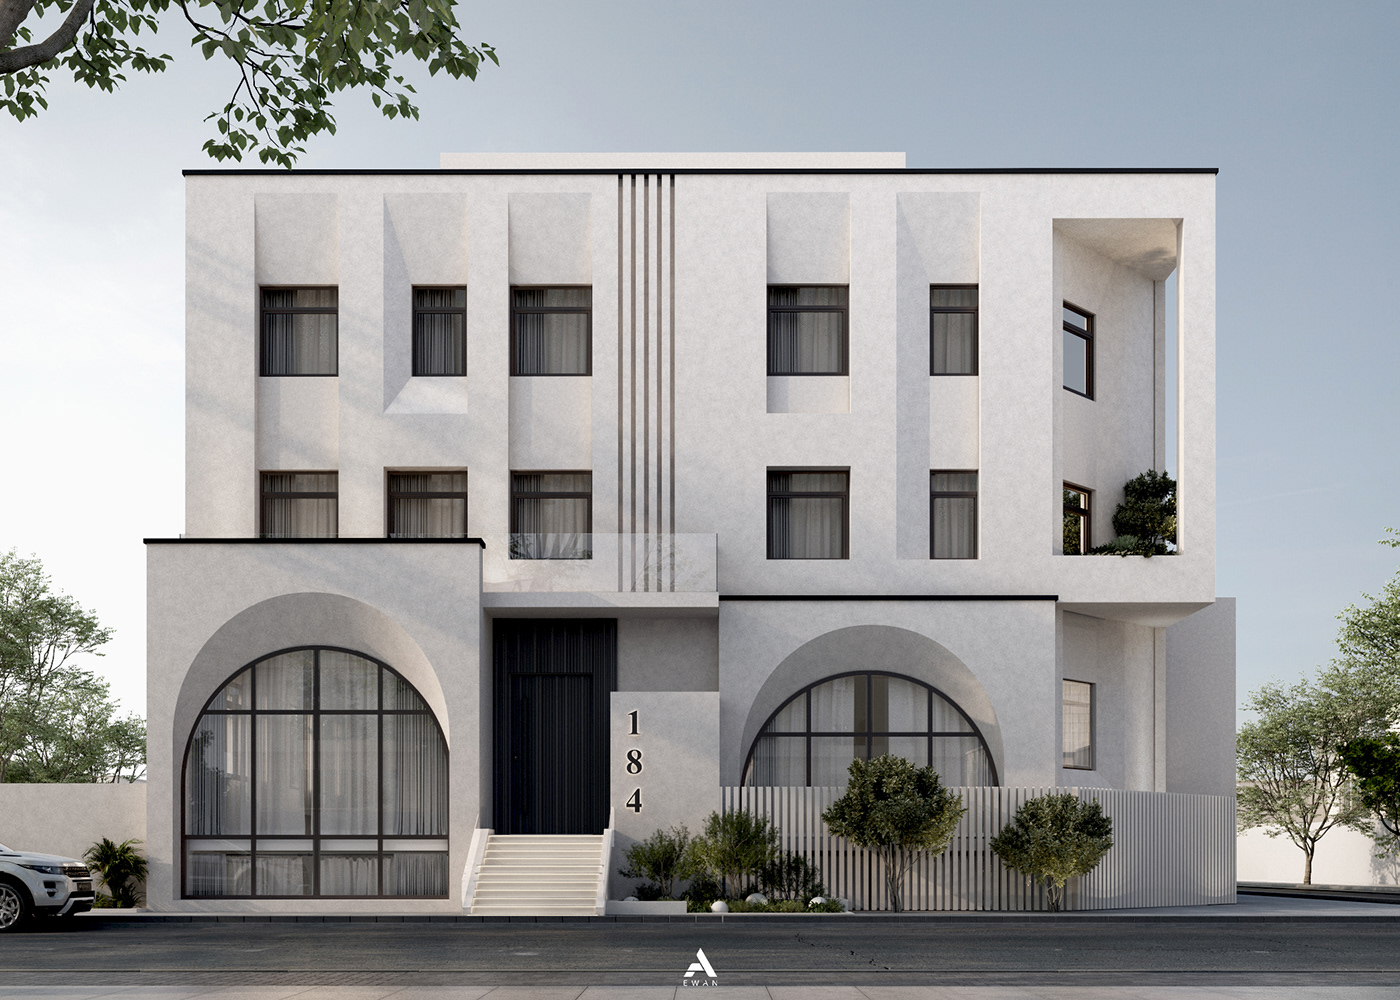 Villa modern minimal arches exterior Kuwait facade design house visualization